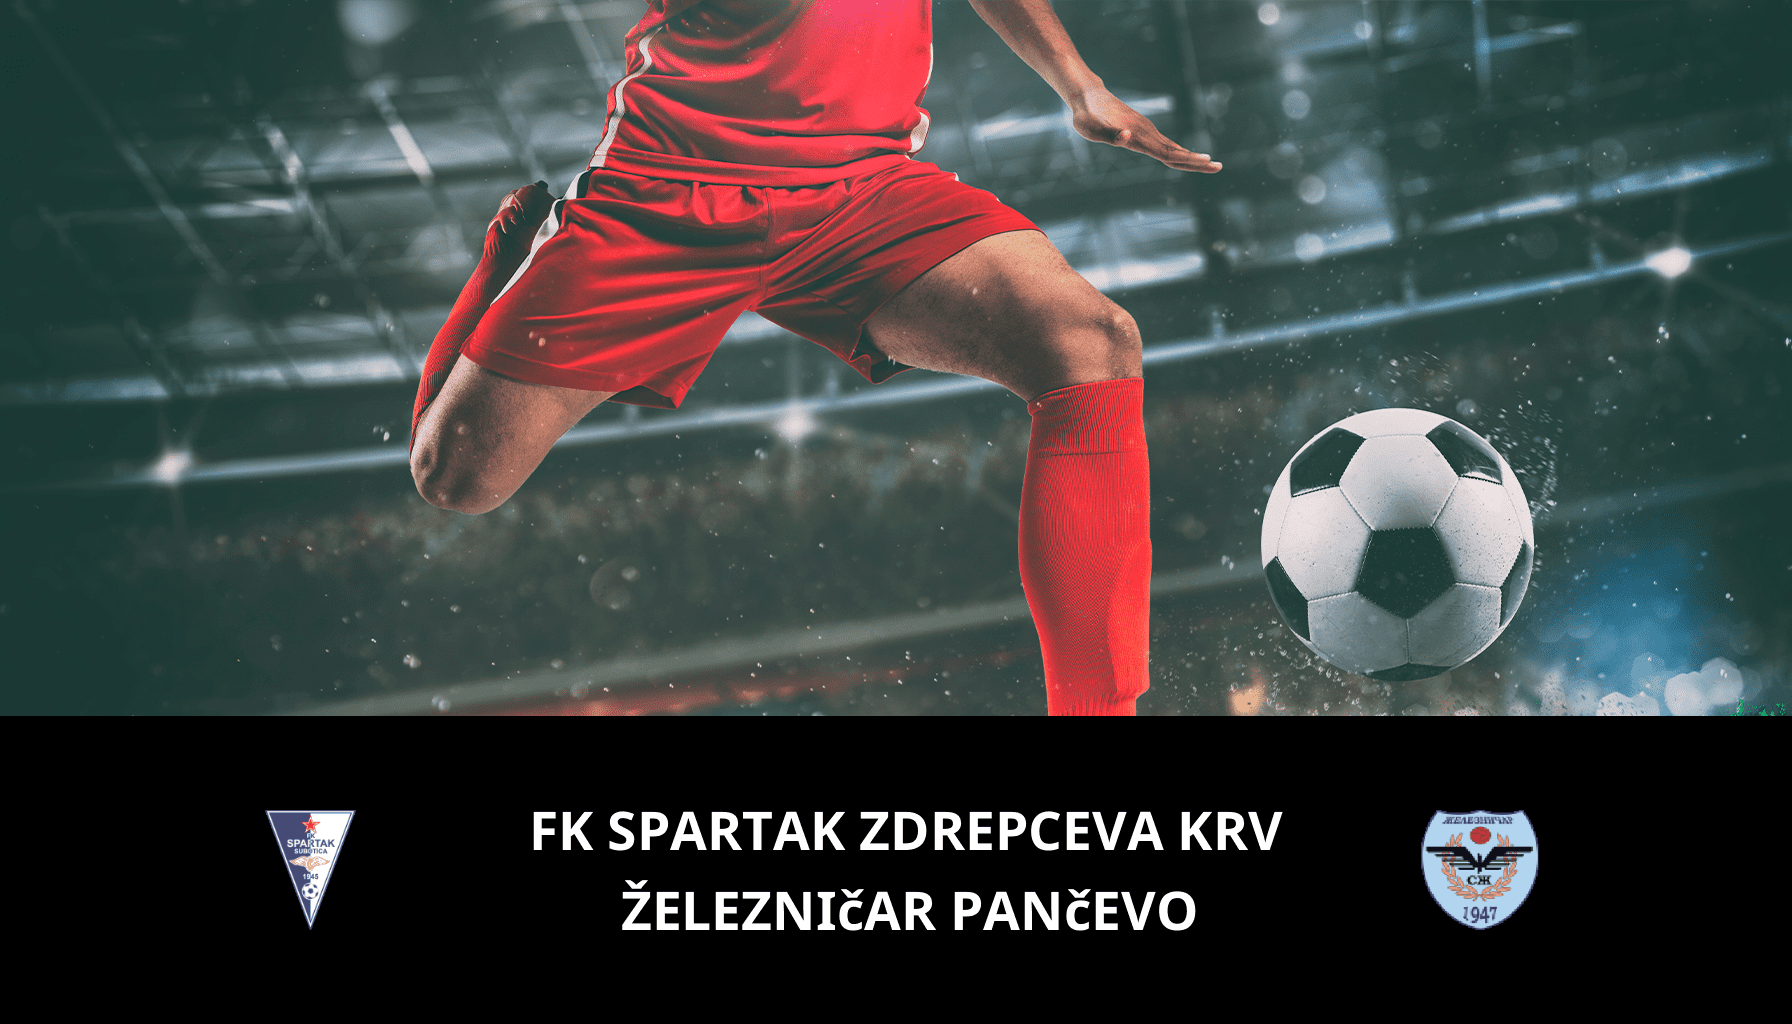 Prediction for FK Spartak Zdrepceva KRV VS Železničar Pančevo on 01/05/2024 Analysis of the match